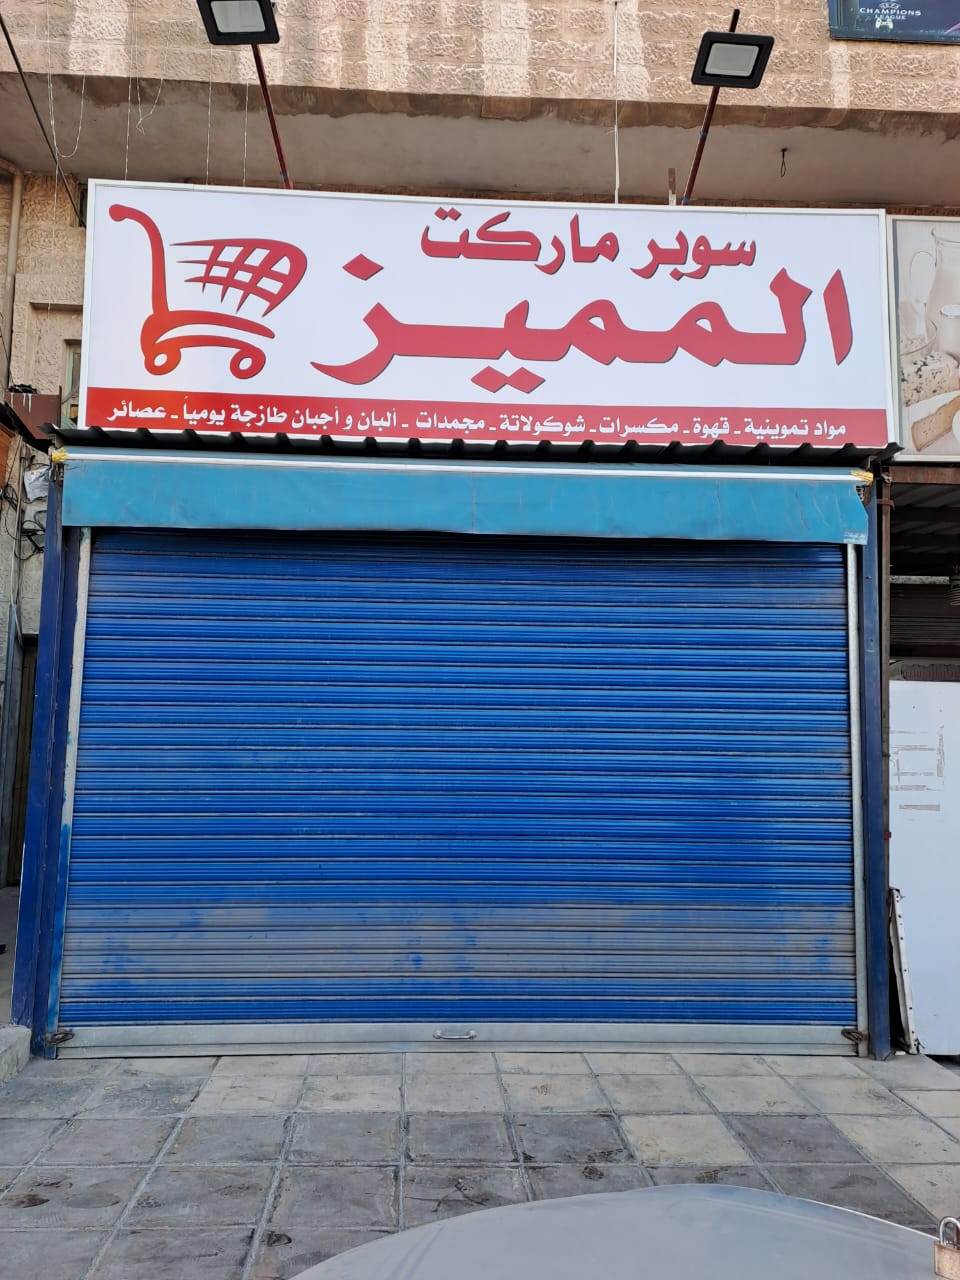 الكرك: المحلات تغلق ابوابها.. والاضراب يشلّ الحركة التجارية - صور